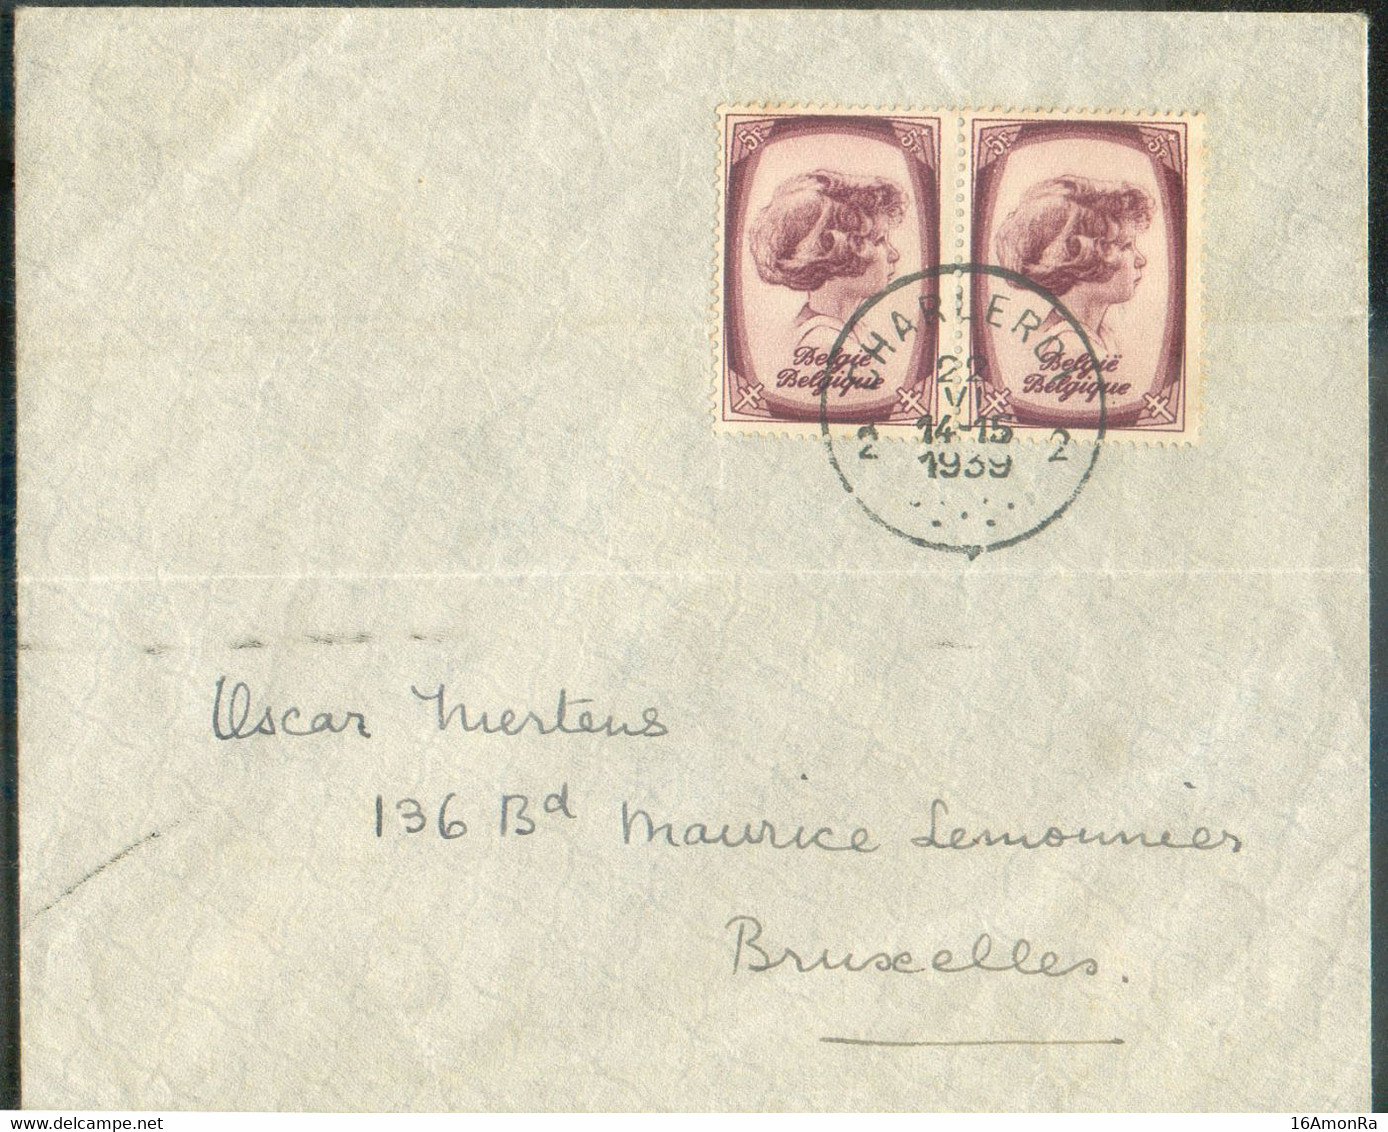 N°495(2) - 5Fr. PRINCE ALBERT (paire) Obl. Sc CHARLEROI 2 sur Enveloppe Du 22-VI-1939 Vers Bruxelles. - TB - 20425 - Storia Postale